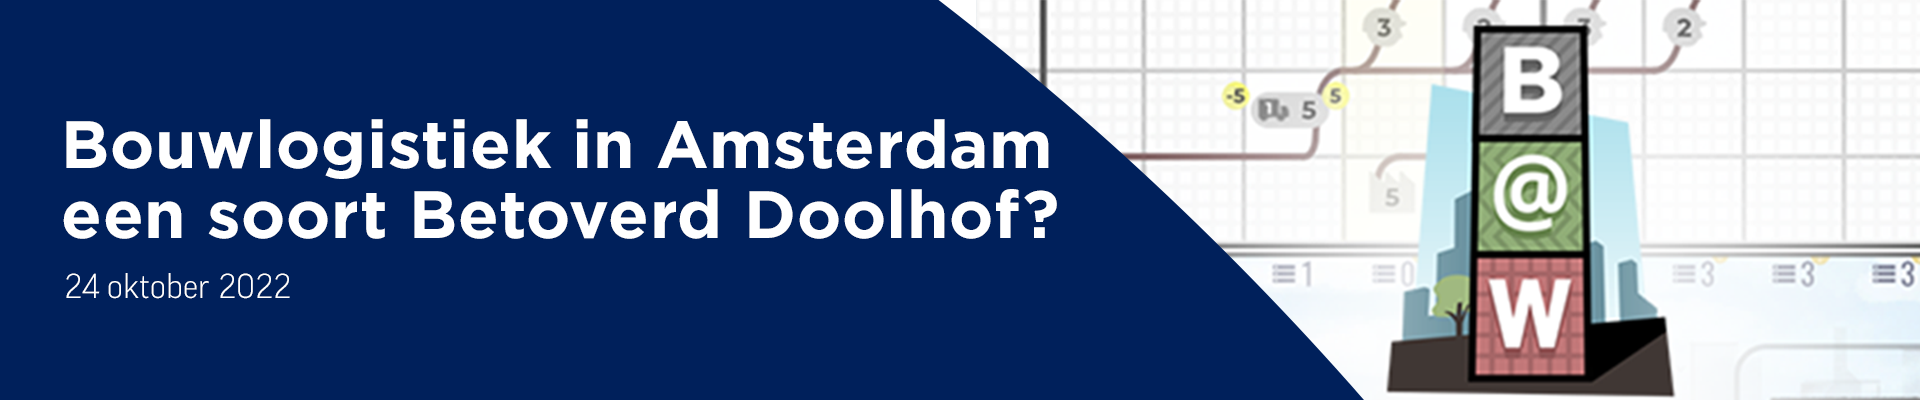 Bouwlogistiek in Amsterdam een soort Betoverd Doolhof?